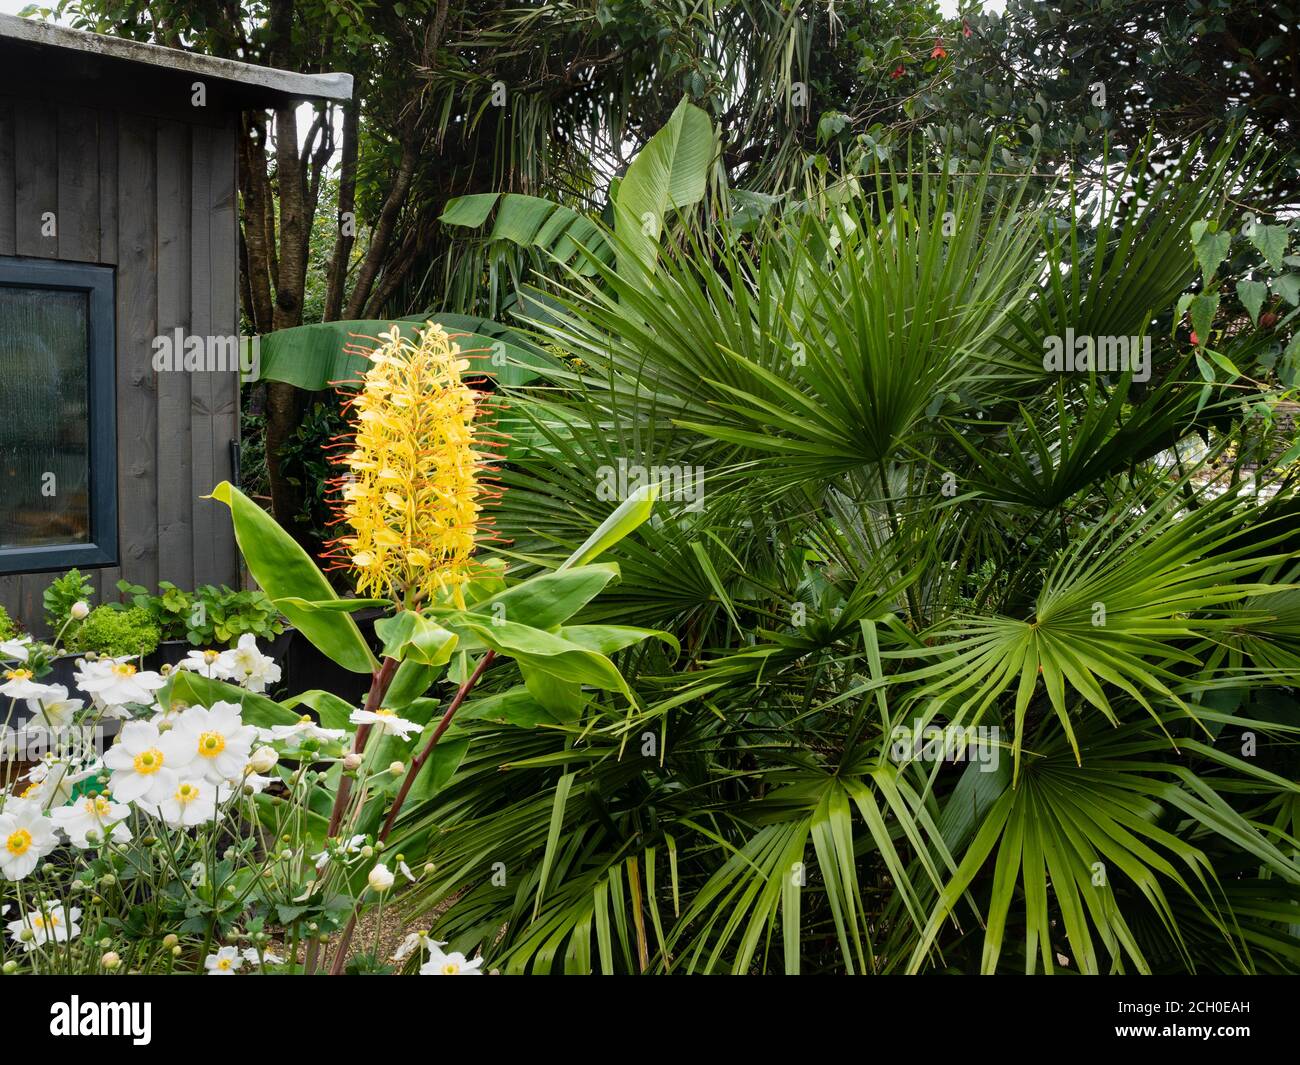 Exotic garden display with Hedychium gardnerianum, Chamaerops humilis, Anemone x hybrida 'Honorine Jobert' and Musa basjoo Stock Photo